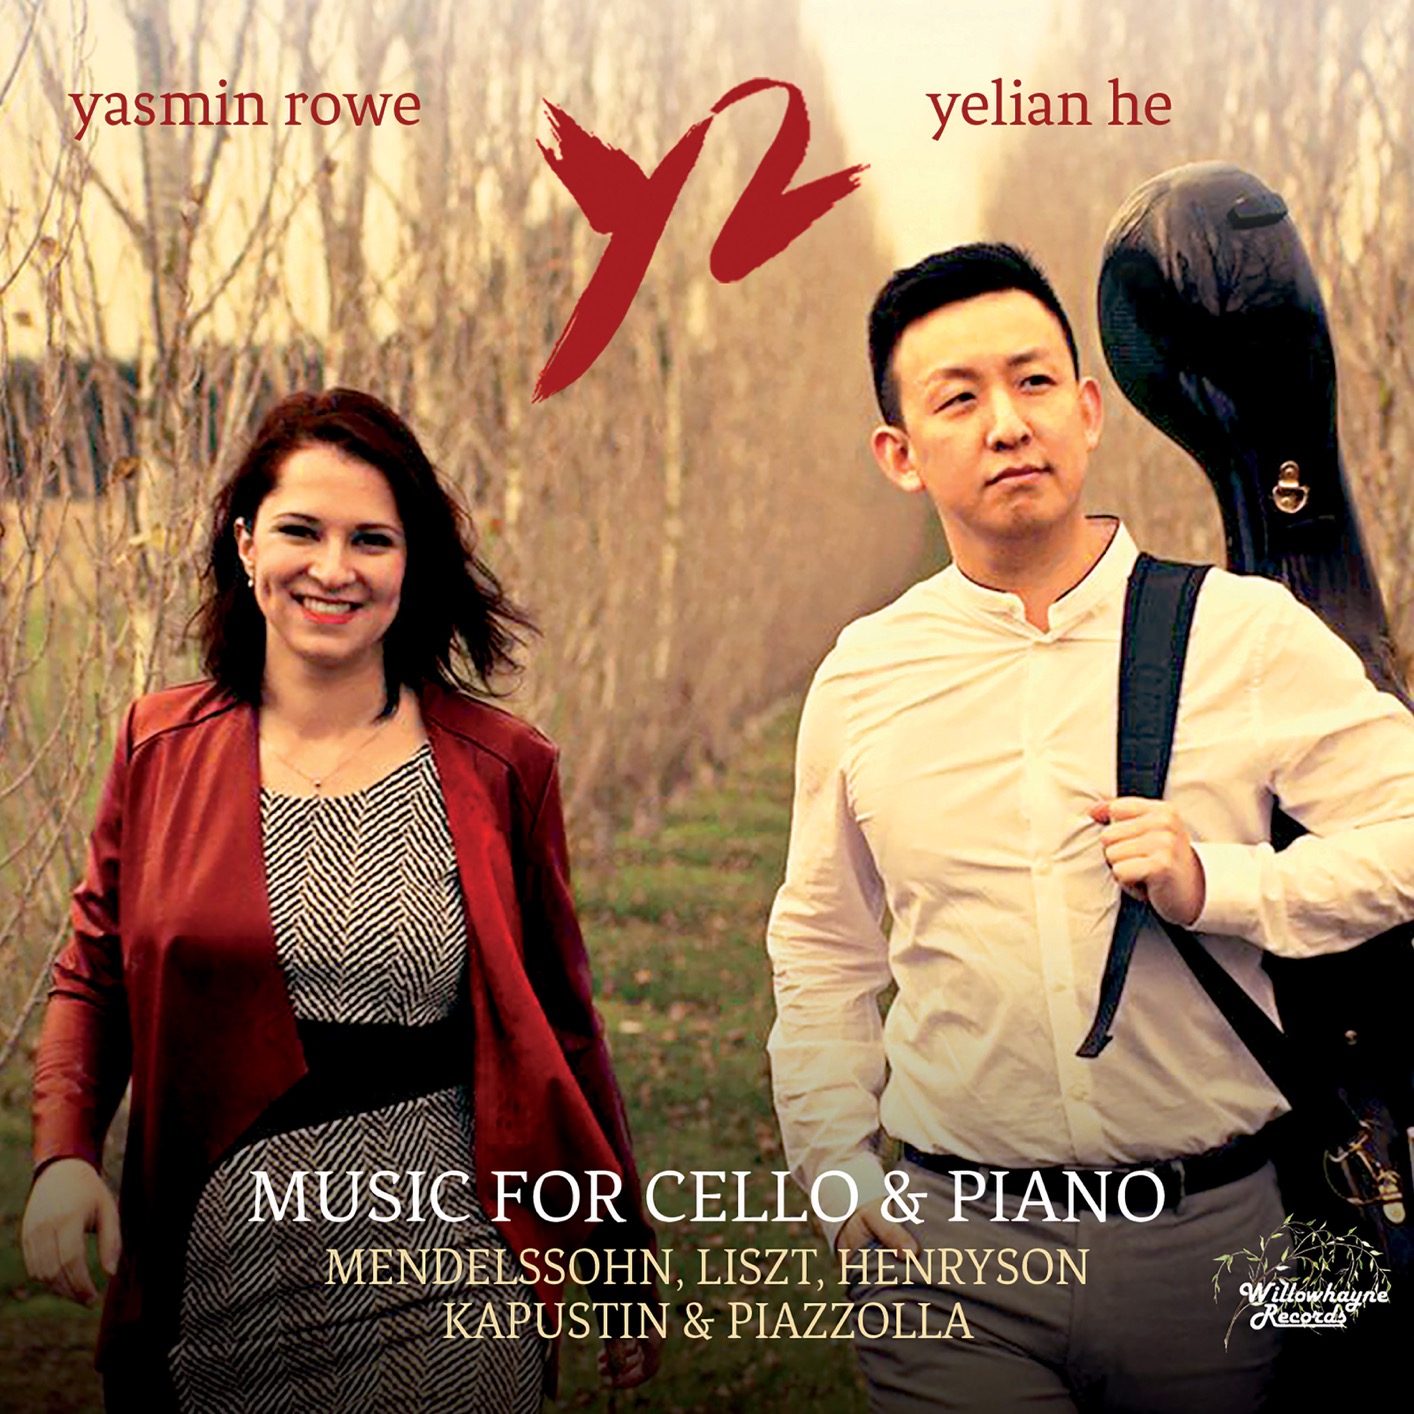 Yasmin Rowe & Yelian He – Music for Cello & Piano (2018) [FLAC 24bit/192kHz]